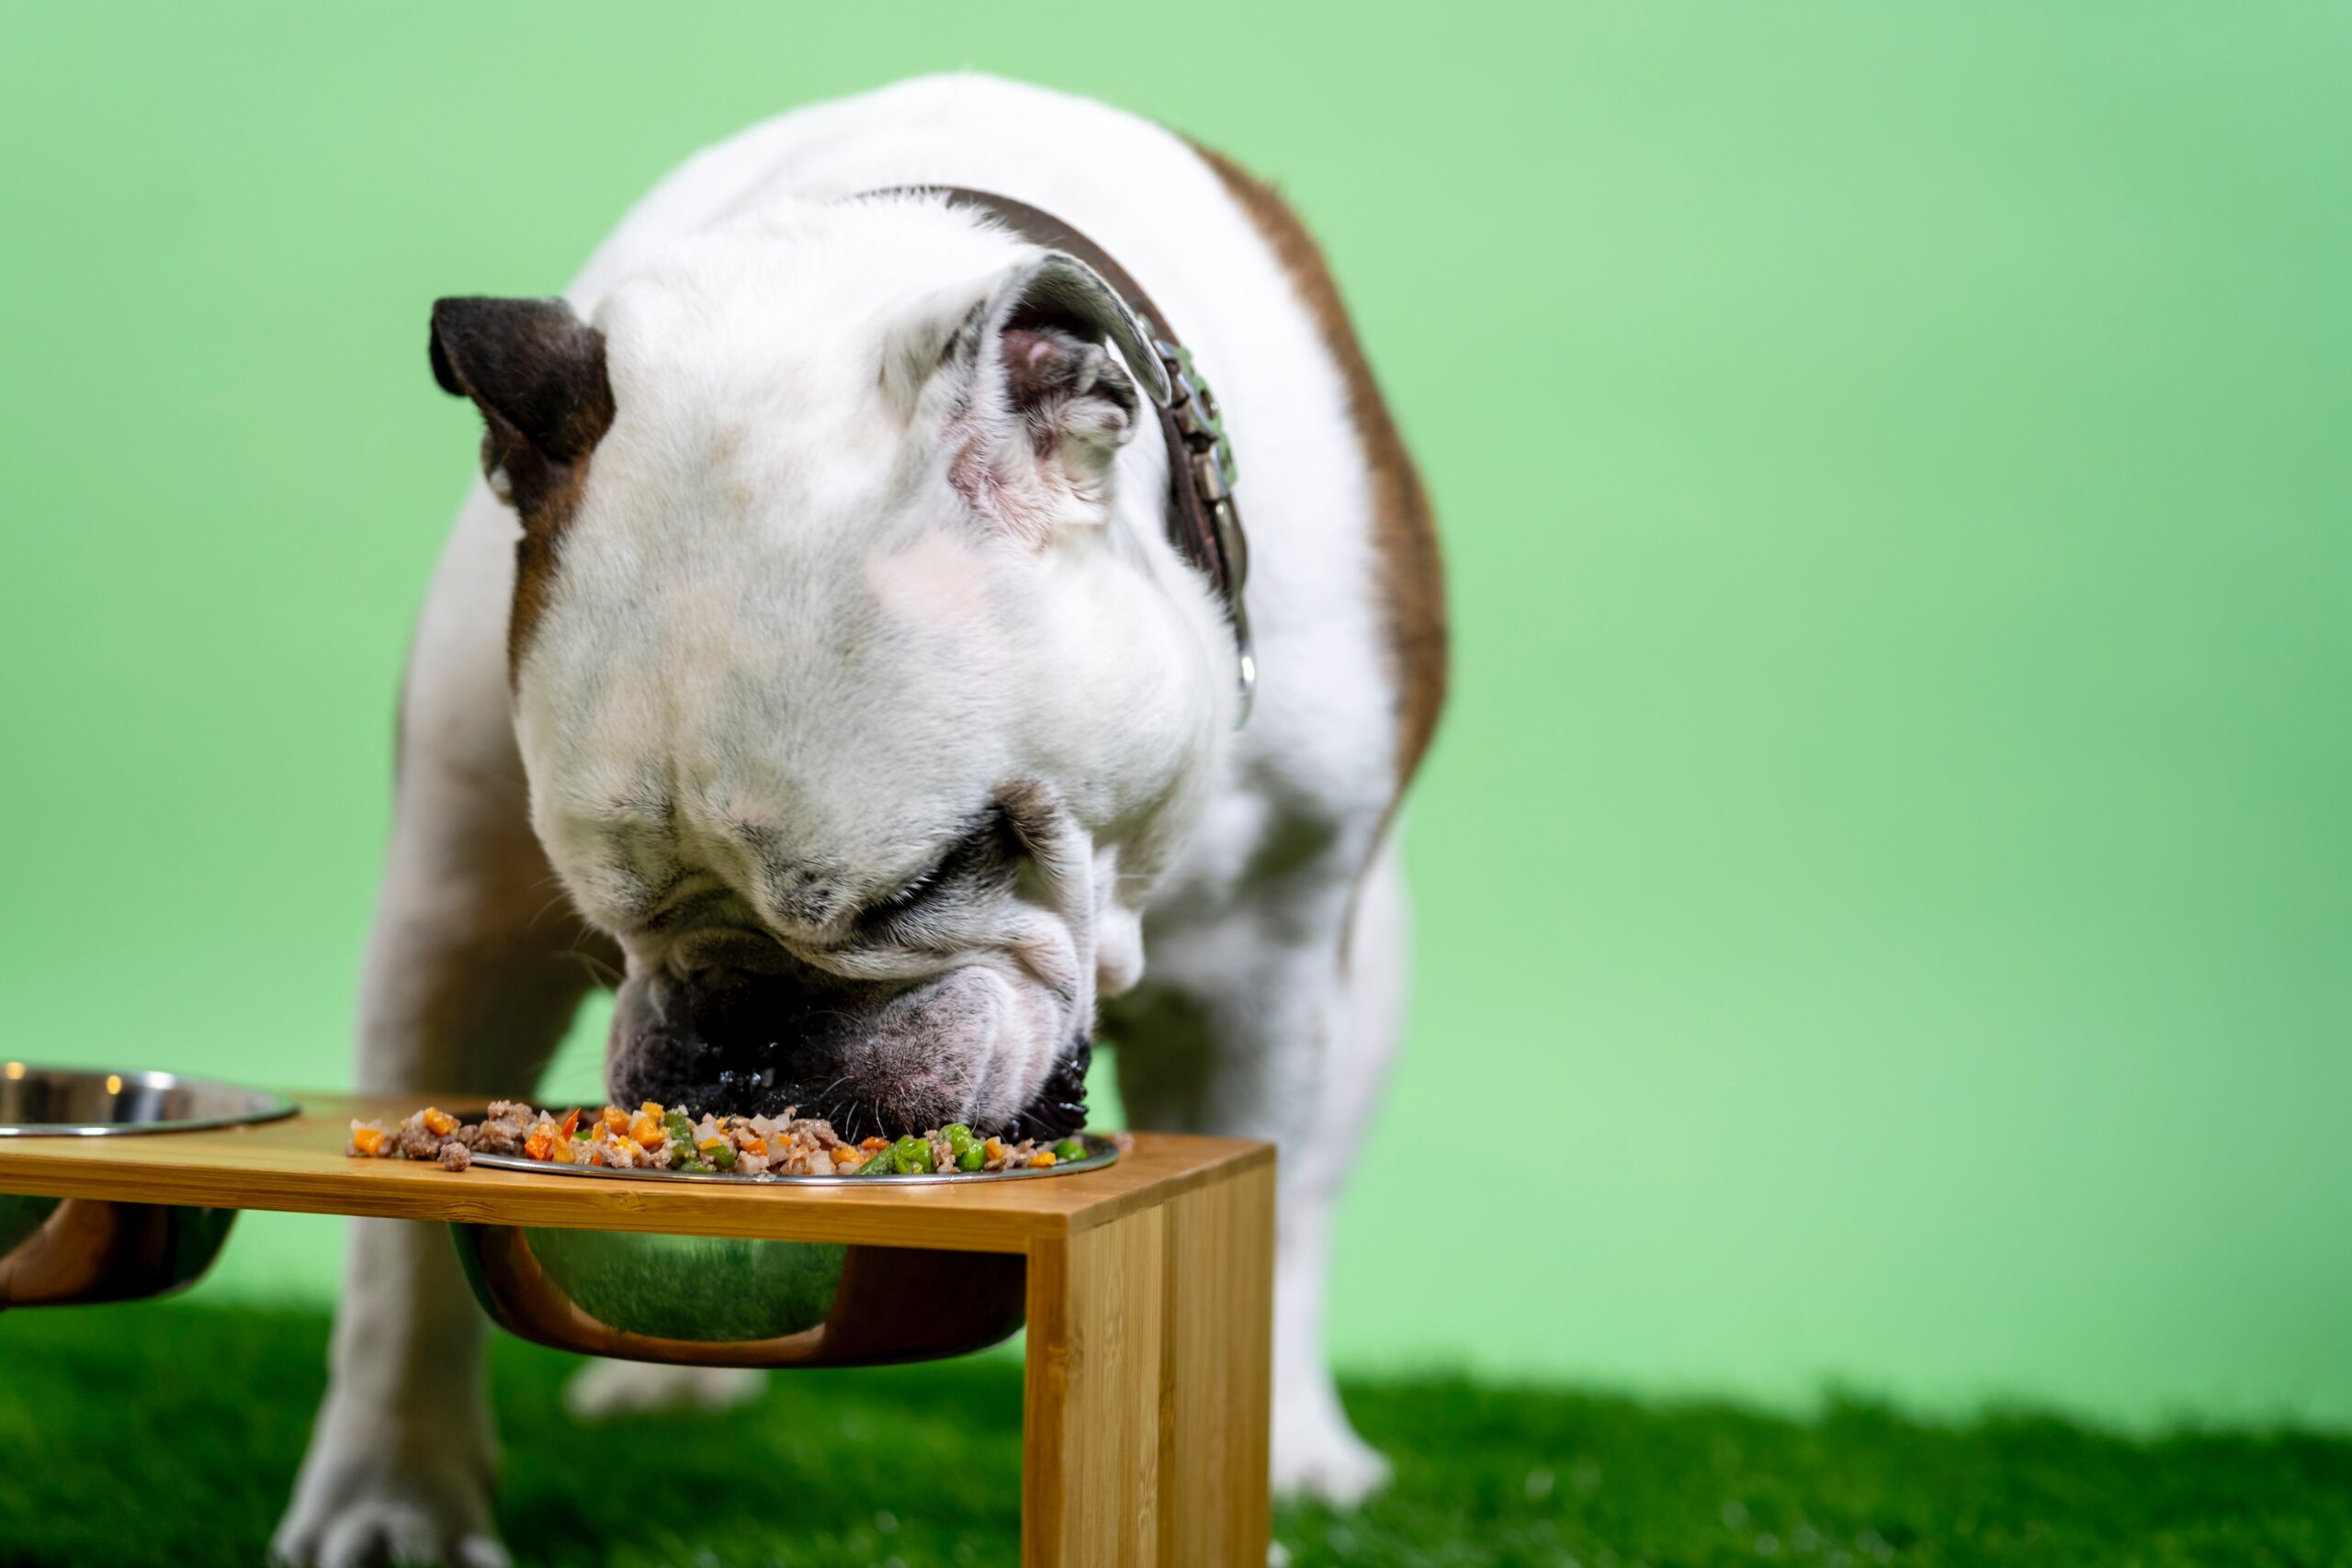 Bulldog eating a bowl of food